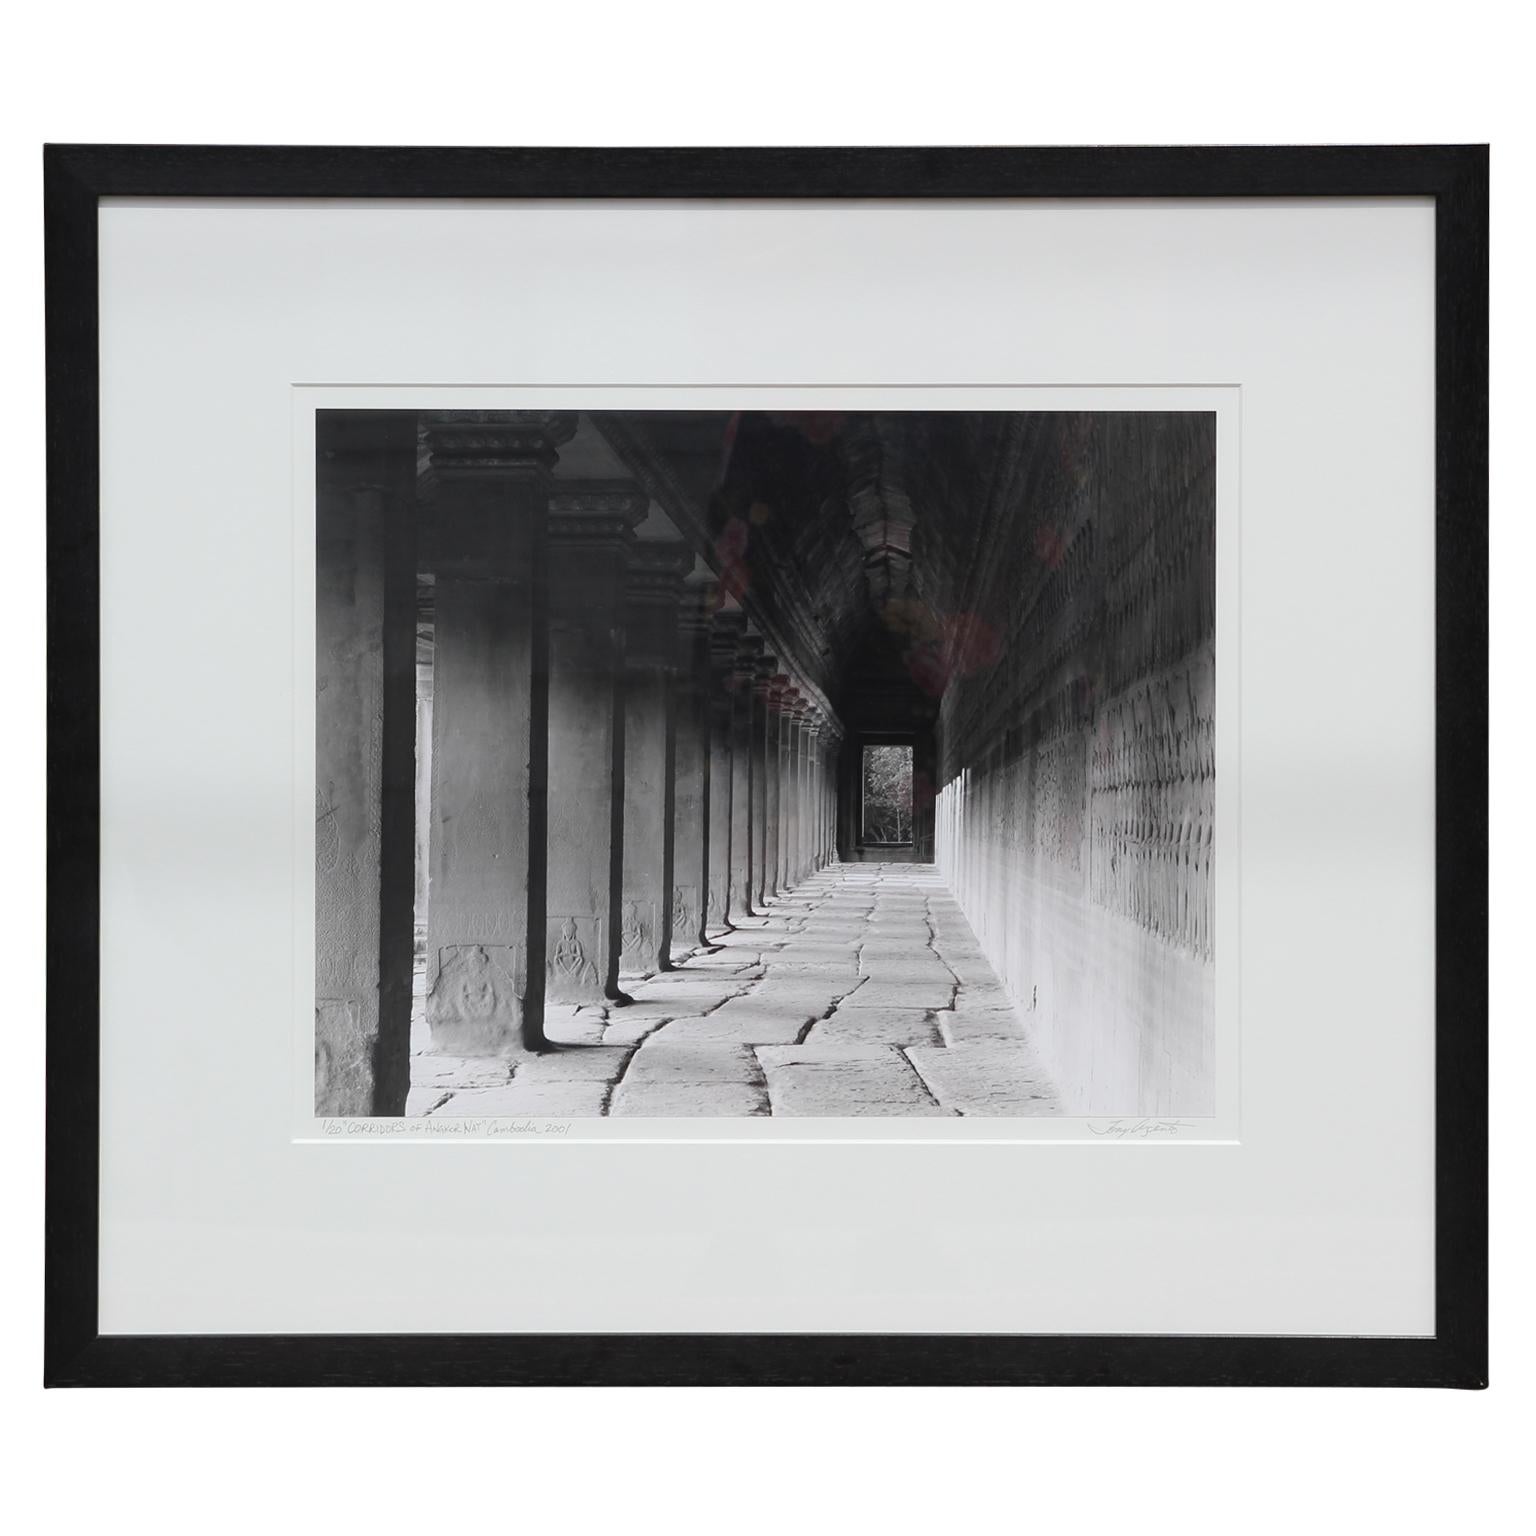 "Corridors of Angkor Wat" Angkor Wat, Cambodia Black and White Photograph